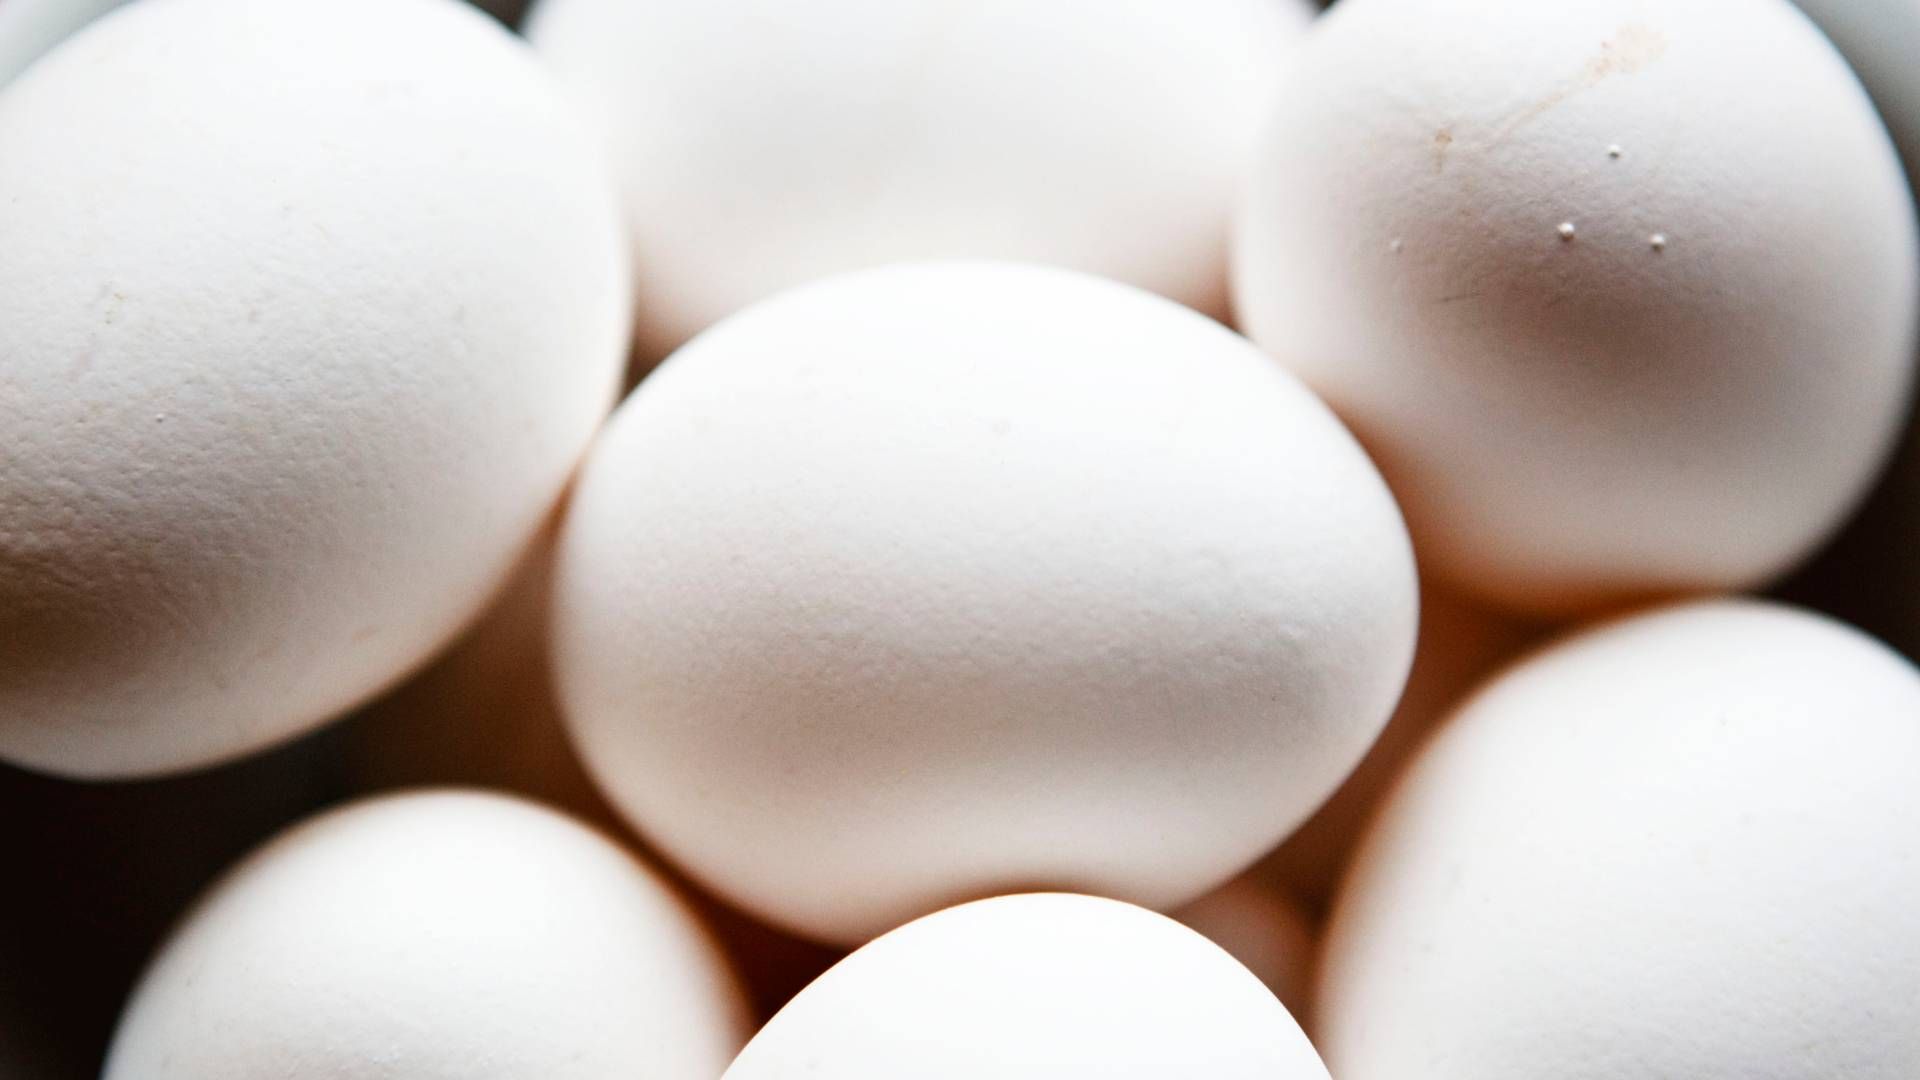 EGGMANGEL: Danske egg på Meny. | Foto: Cornelius Poppe/NTB